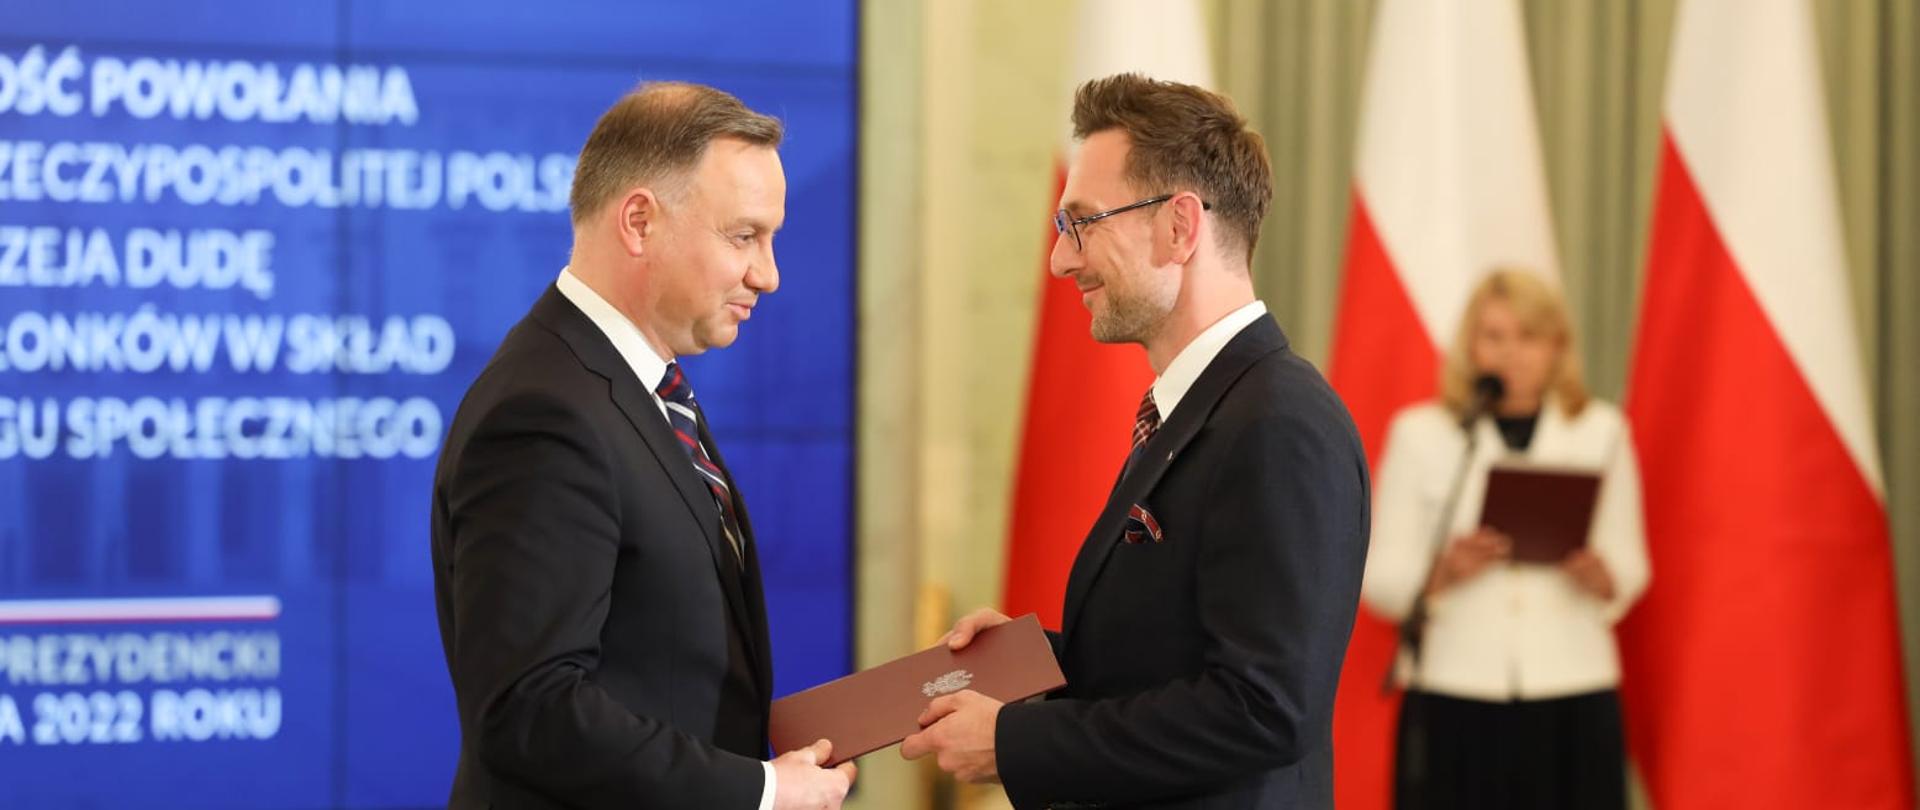 Powołanie ministra Waldemara Budy do Rady Dialogu Społecznego. Na zdjęciu minister Buda i prezydent Andrzej Duda.